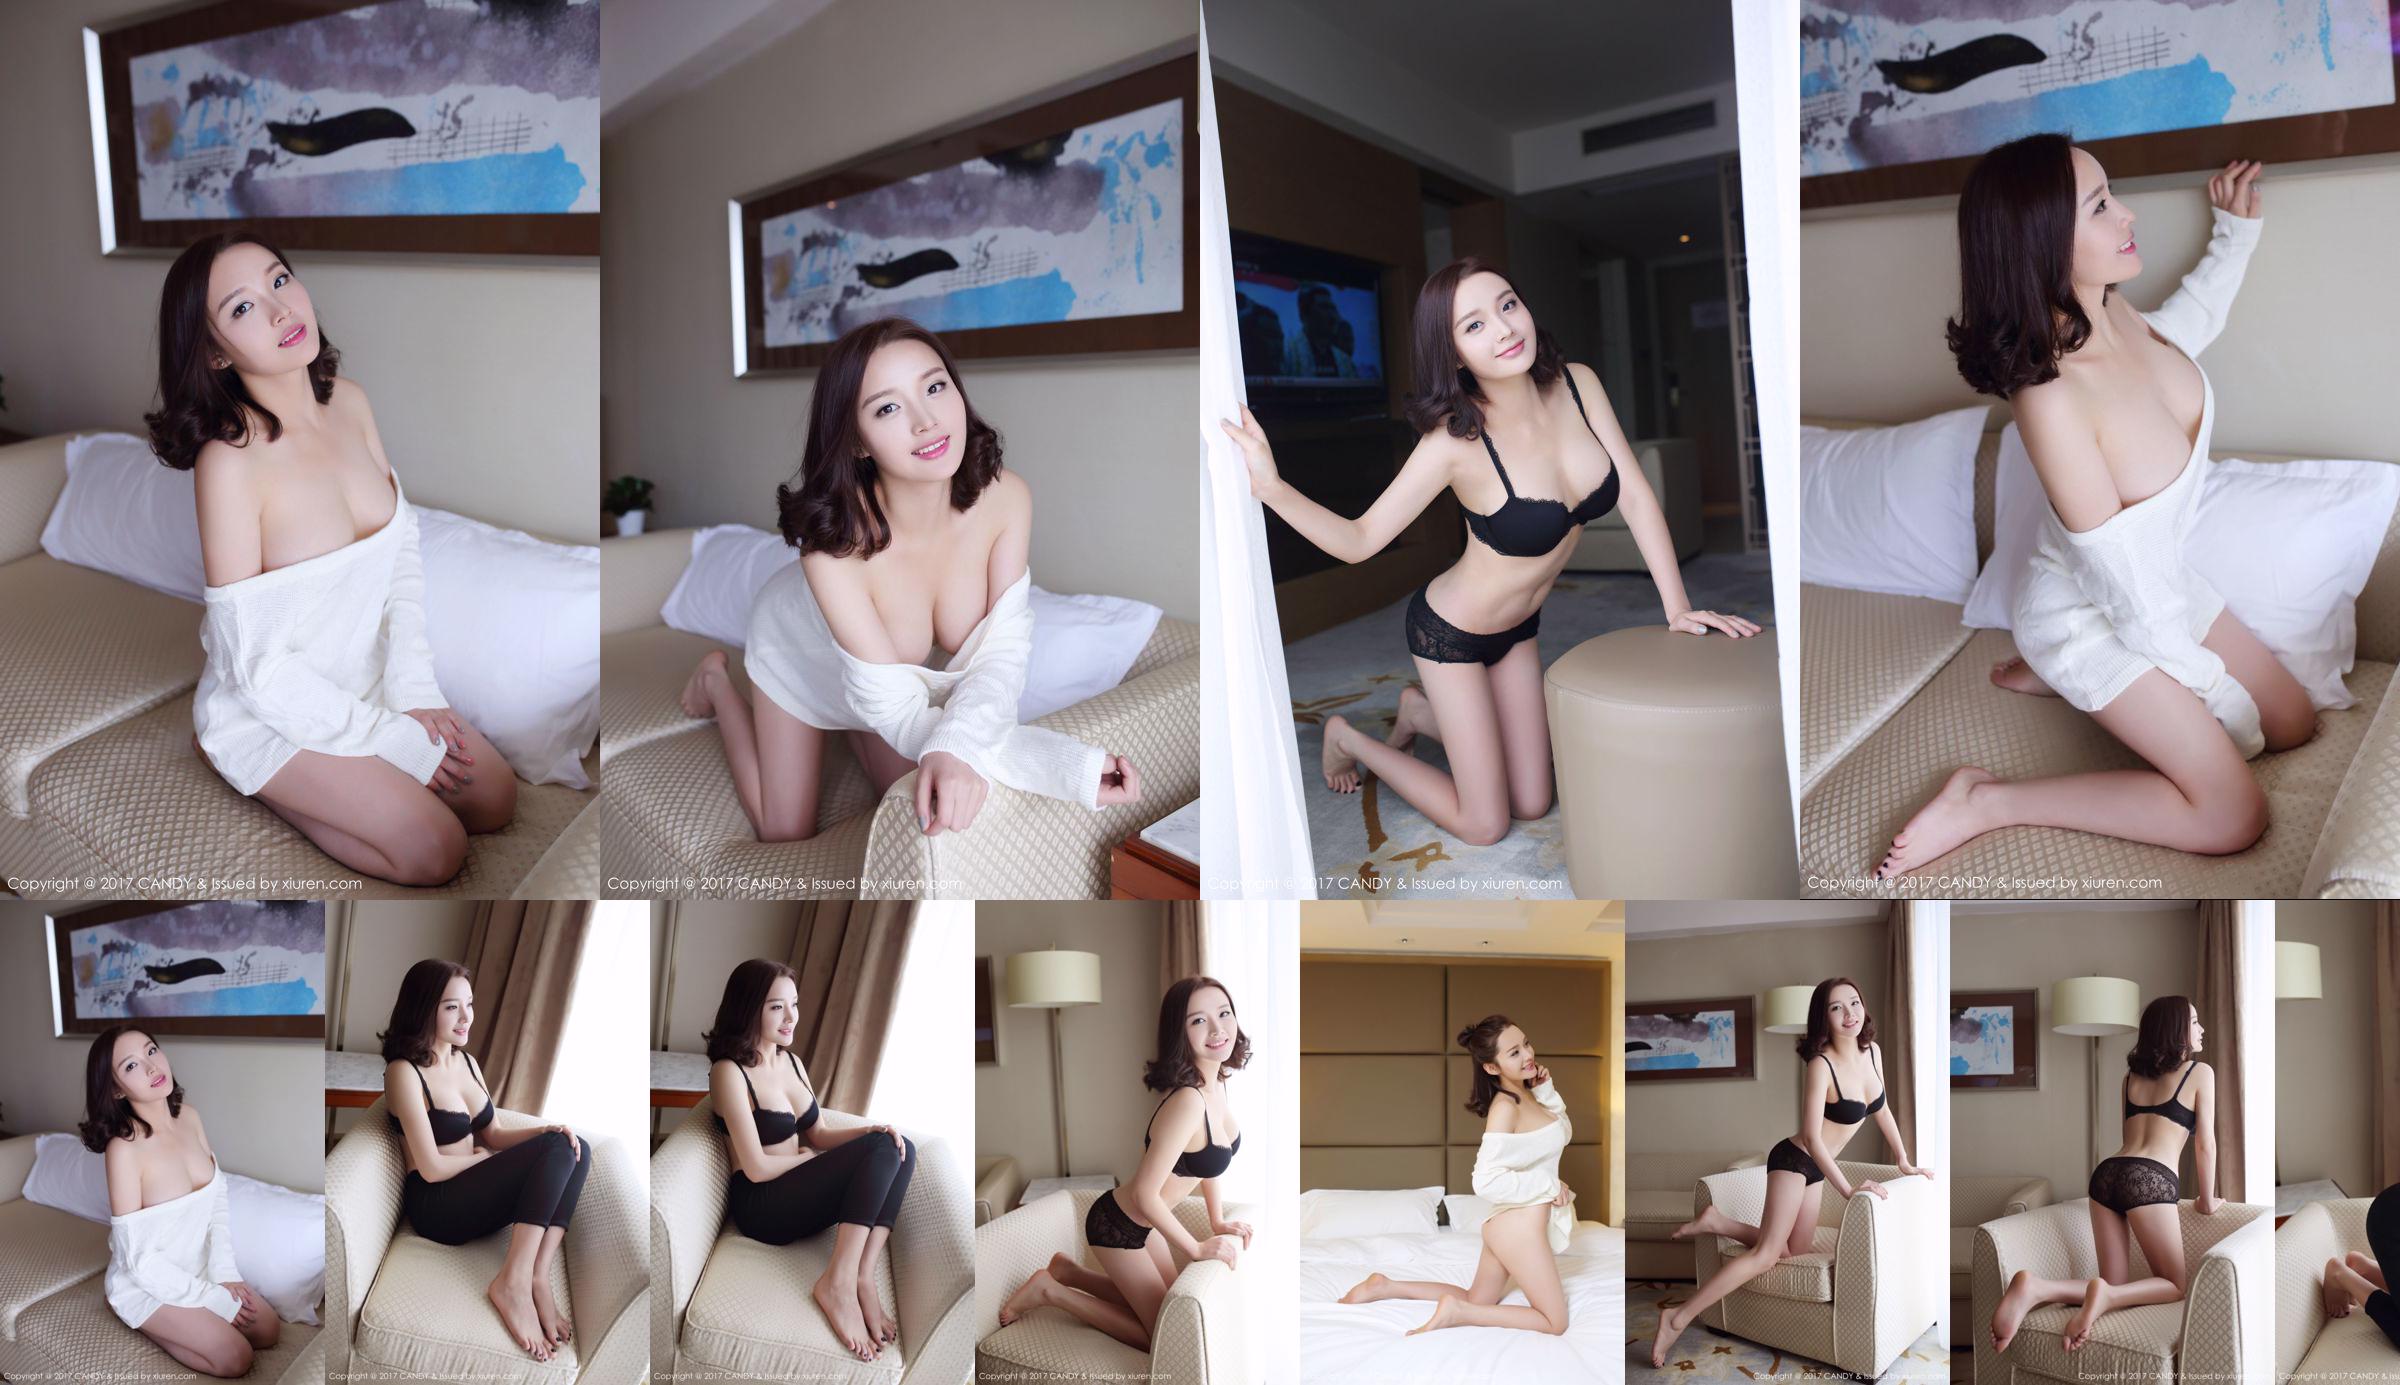 Wang Shiqi "The Beautiful Girl Next Door" [Candy Pictorial CANDY] Vol.033 No.32d29e Page 1